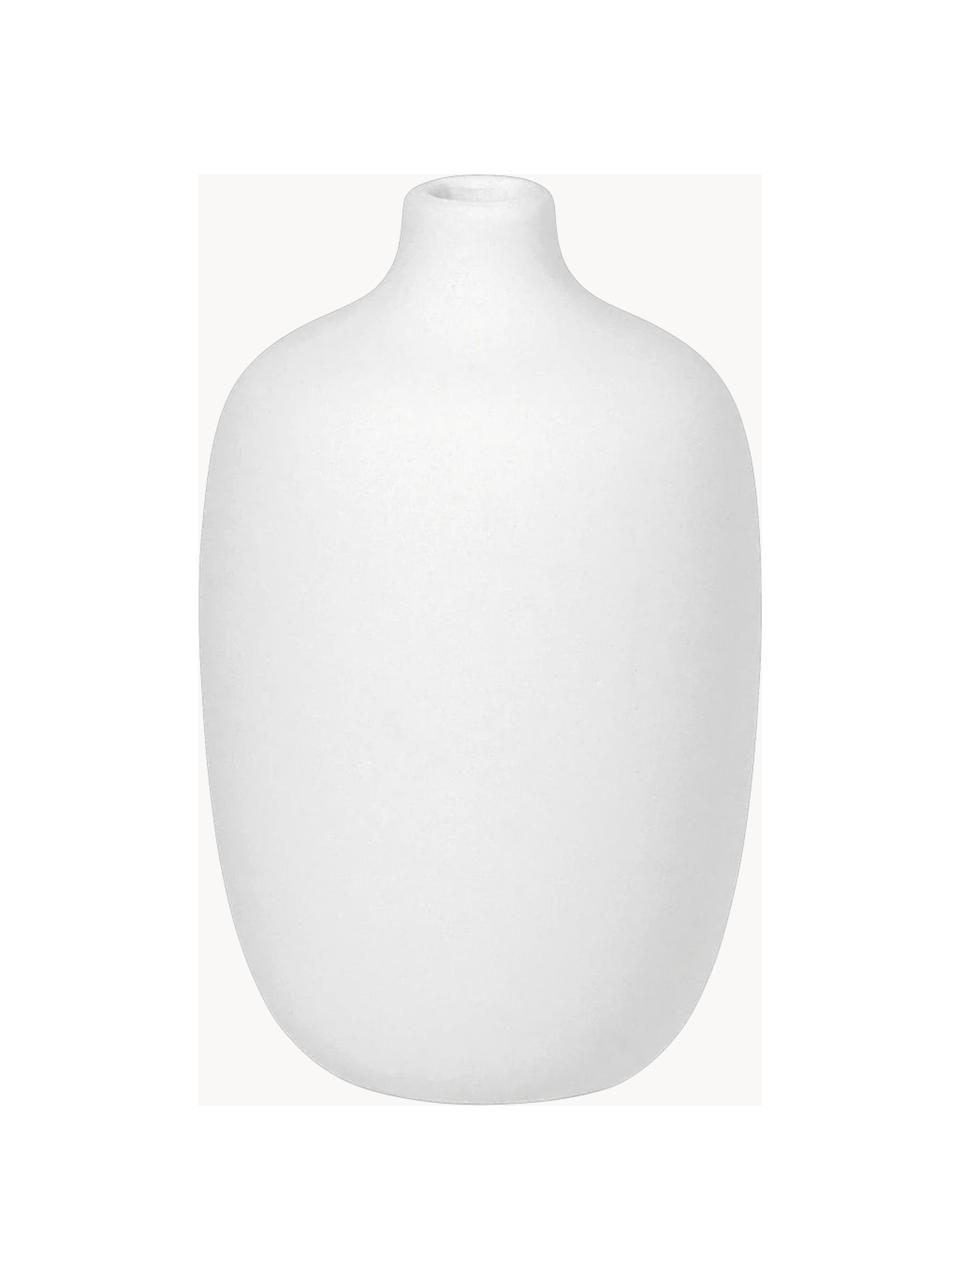 Vaso di design Ceola, alt. 13 cm, Ceramica, Bianco, Ø 8 x Alt. 13 cm